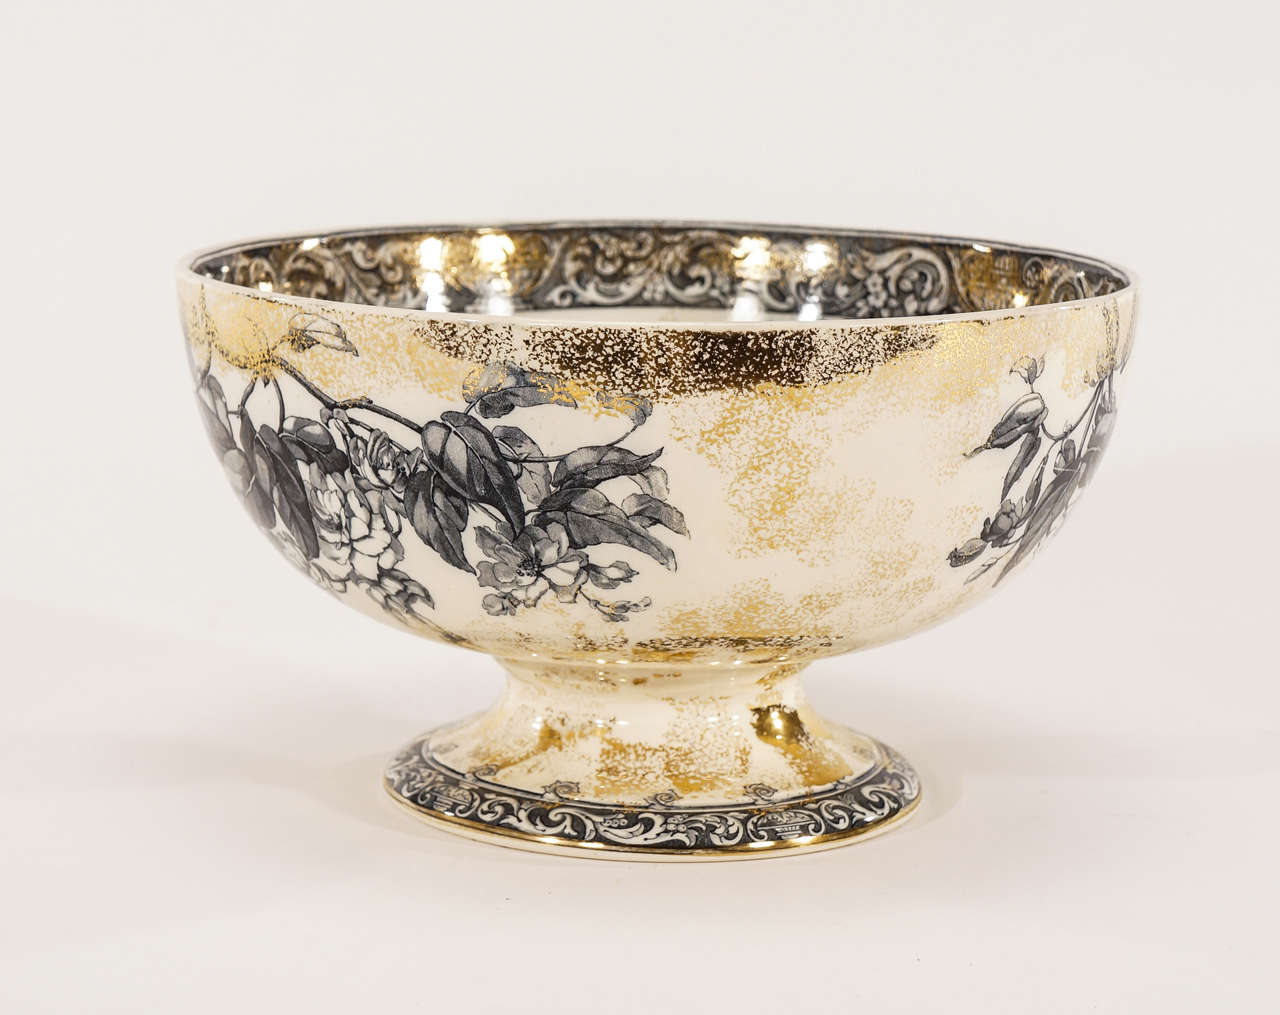 Parfait comme centre de table, ce bol à punch sur pied Doulton du XIXe siècle est magnifiquement décoré d'un motif botanique dans un ton bleu d'encre sur fond ivoire et rehaussé d'émaux dorés. Les bordures sont ornées d'un motif de transfert